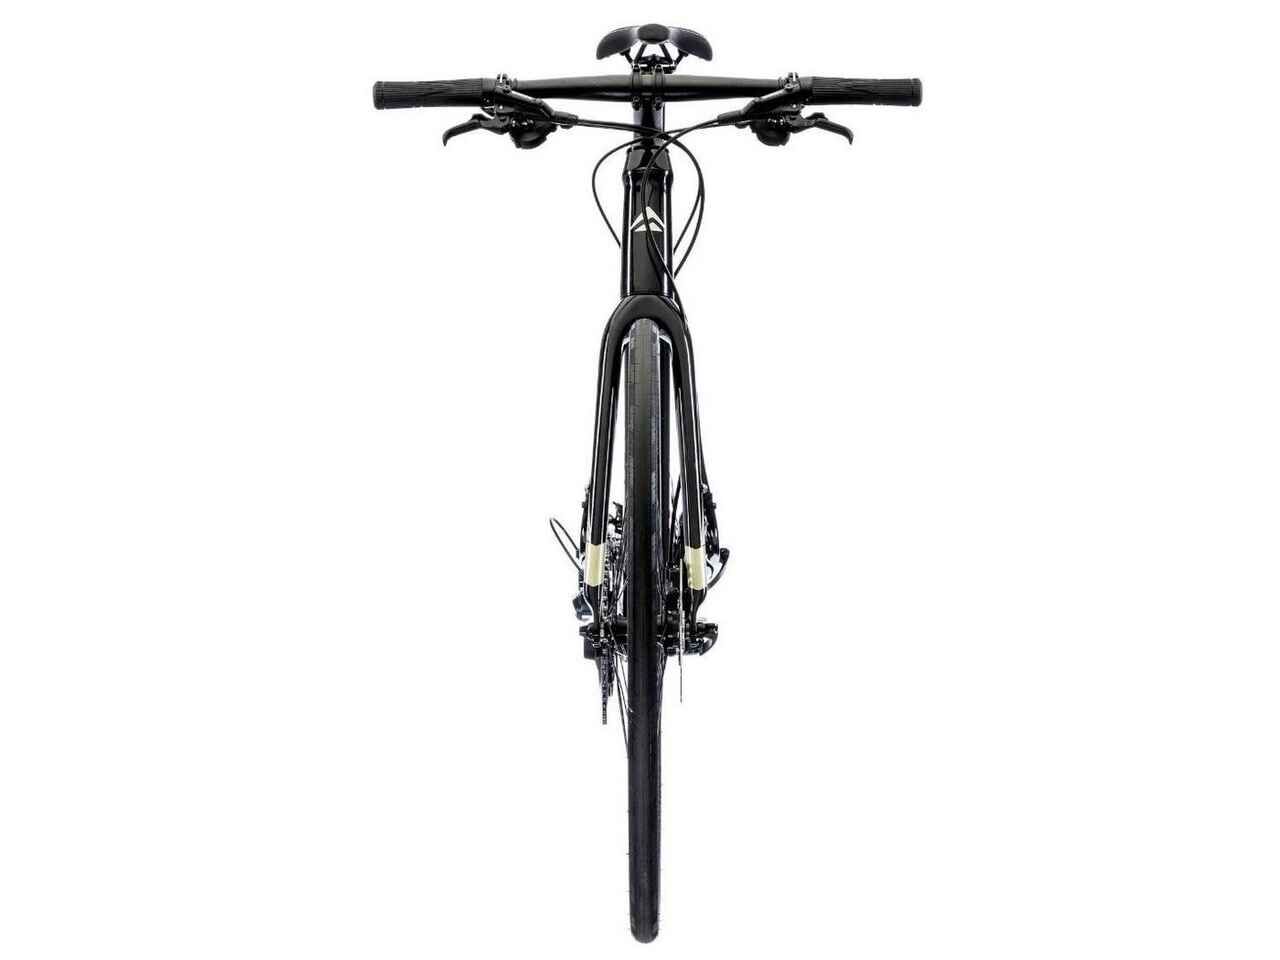 Велосипед Merida Speeder 900 (2020) ML (Черный/Серебристый/Золотистый)